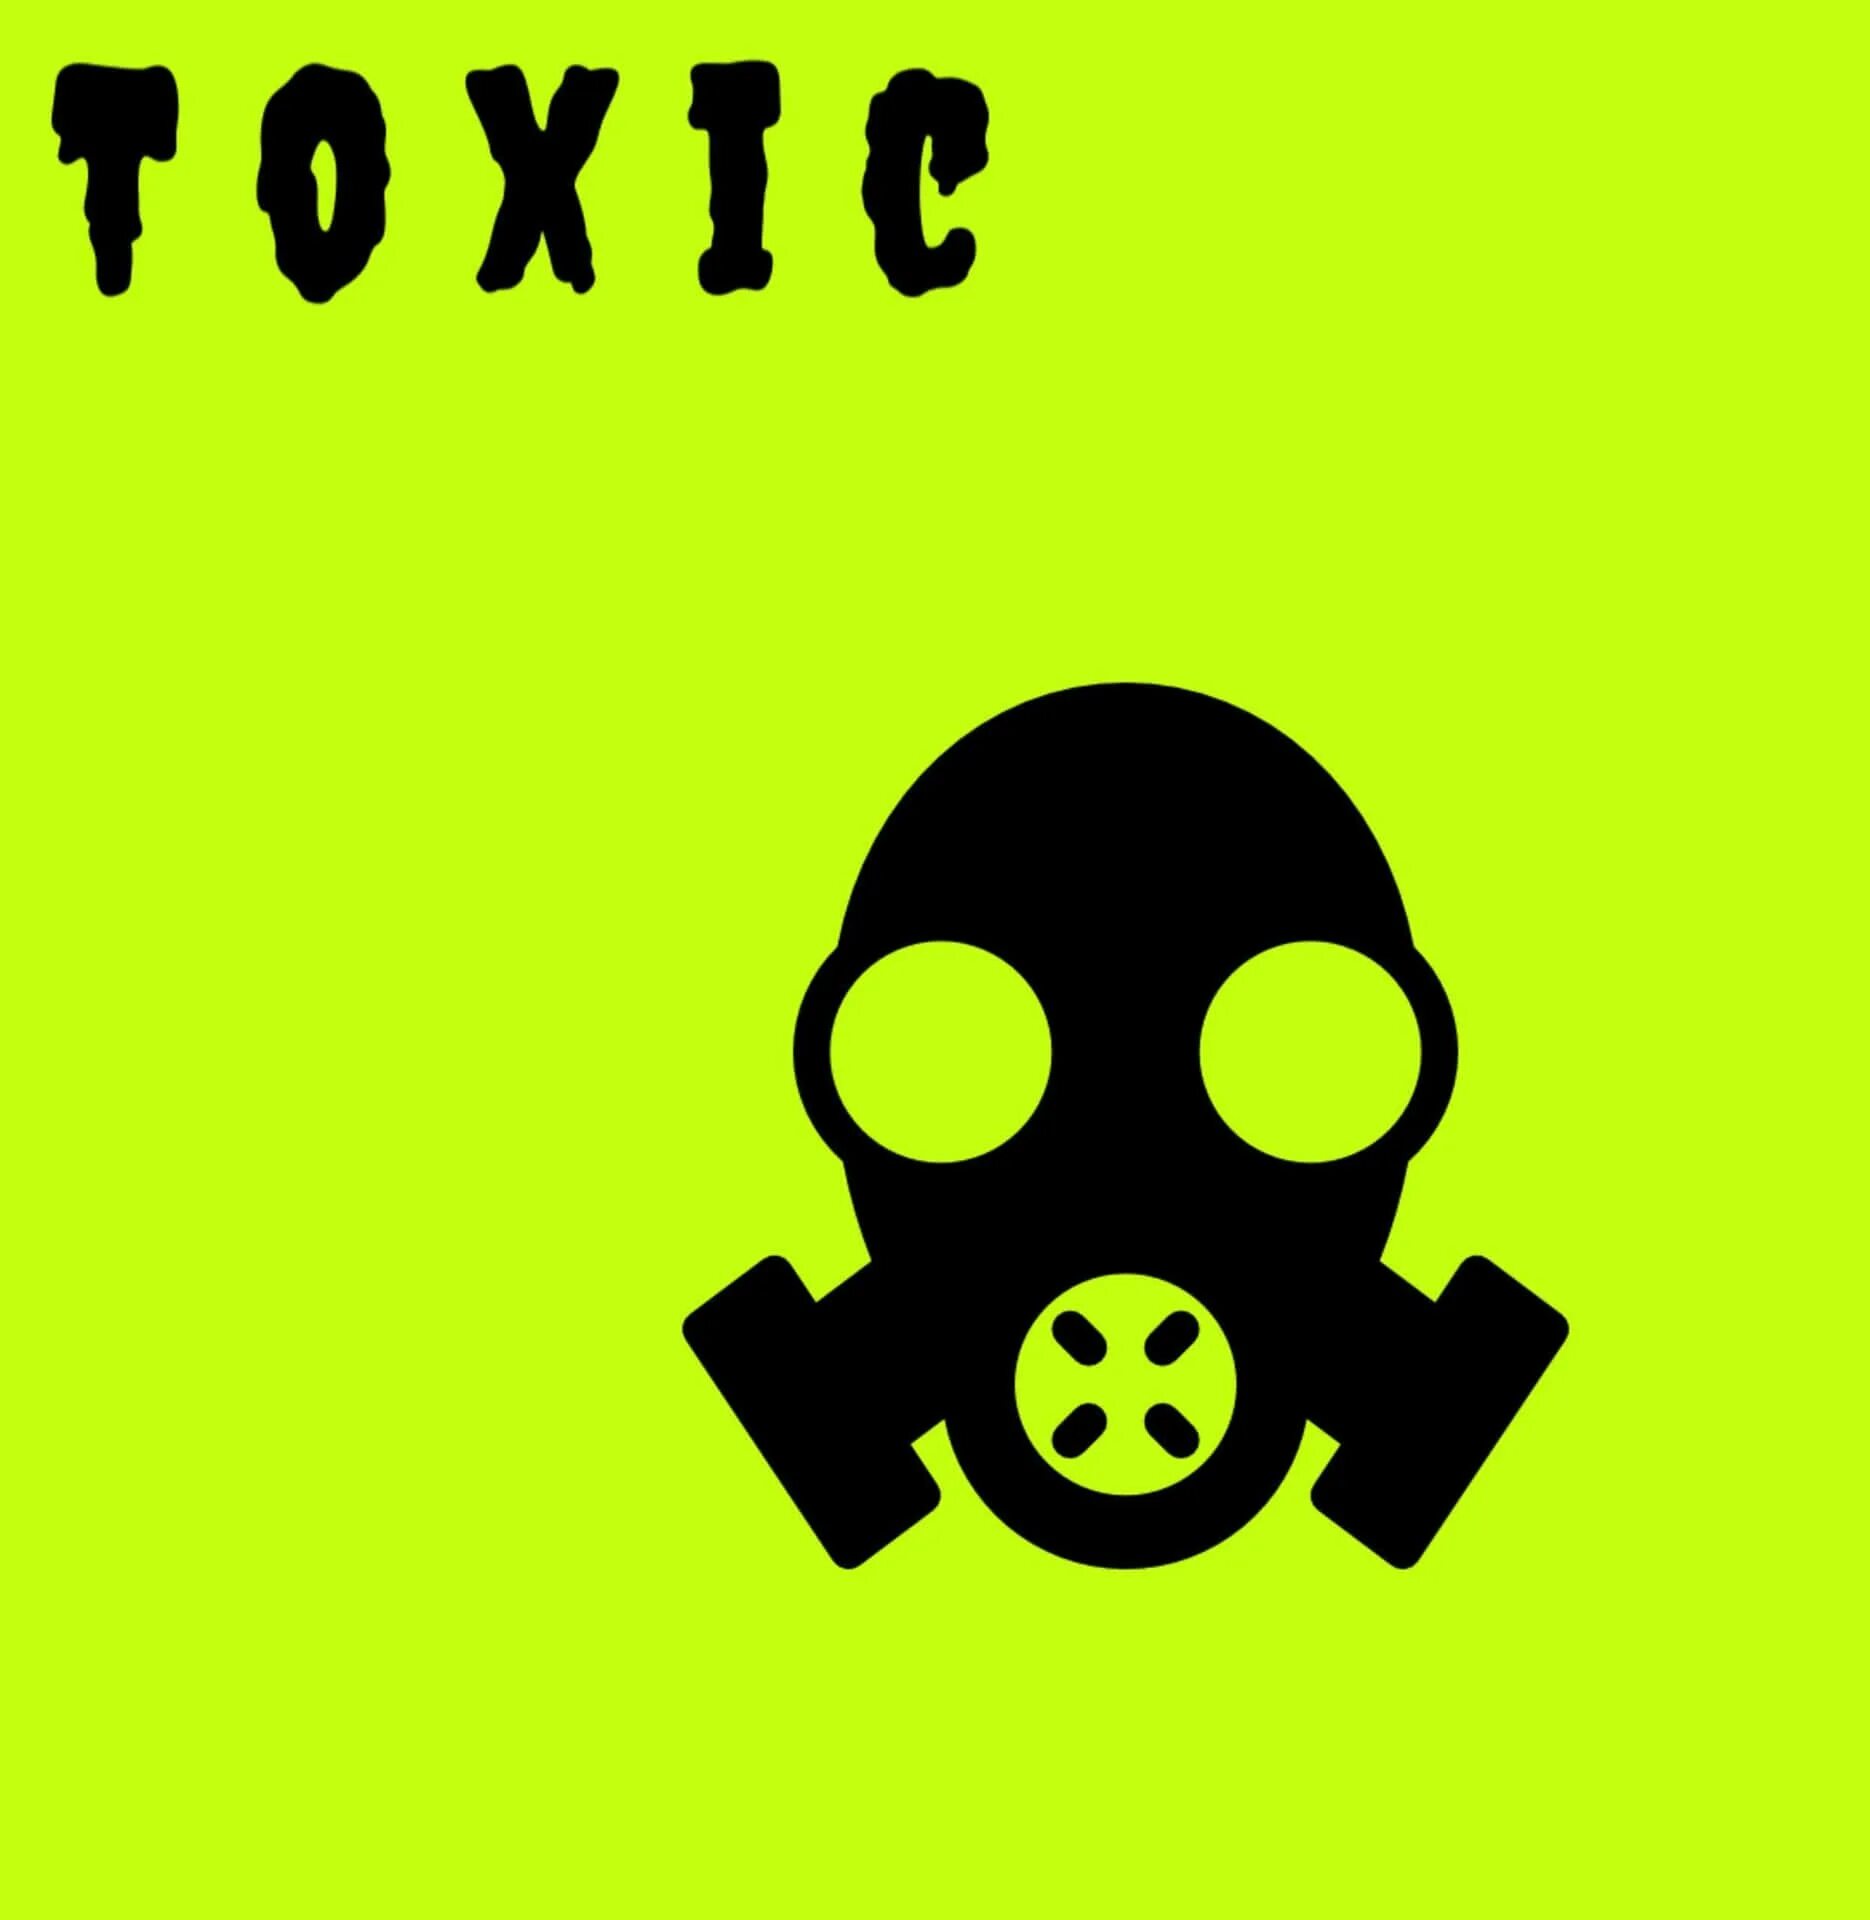 Hurt песня toxic. Трек Toxic. Токсичный альбом. Песня Toxic обложка. Токсик исполнитель.